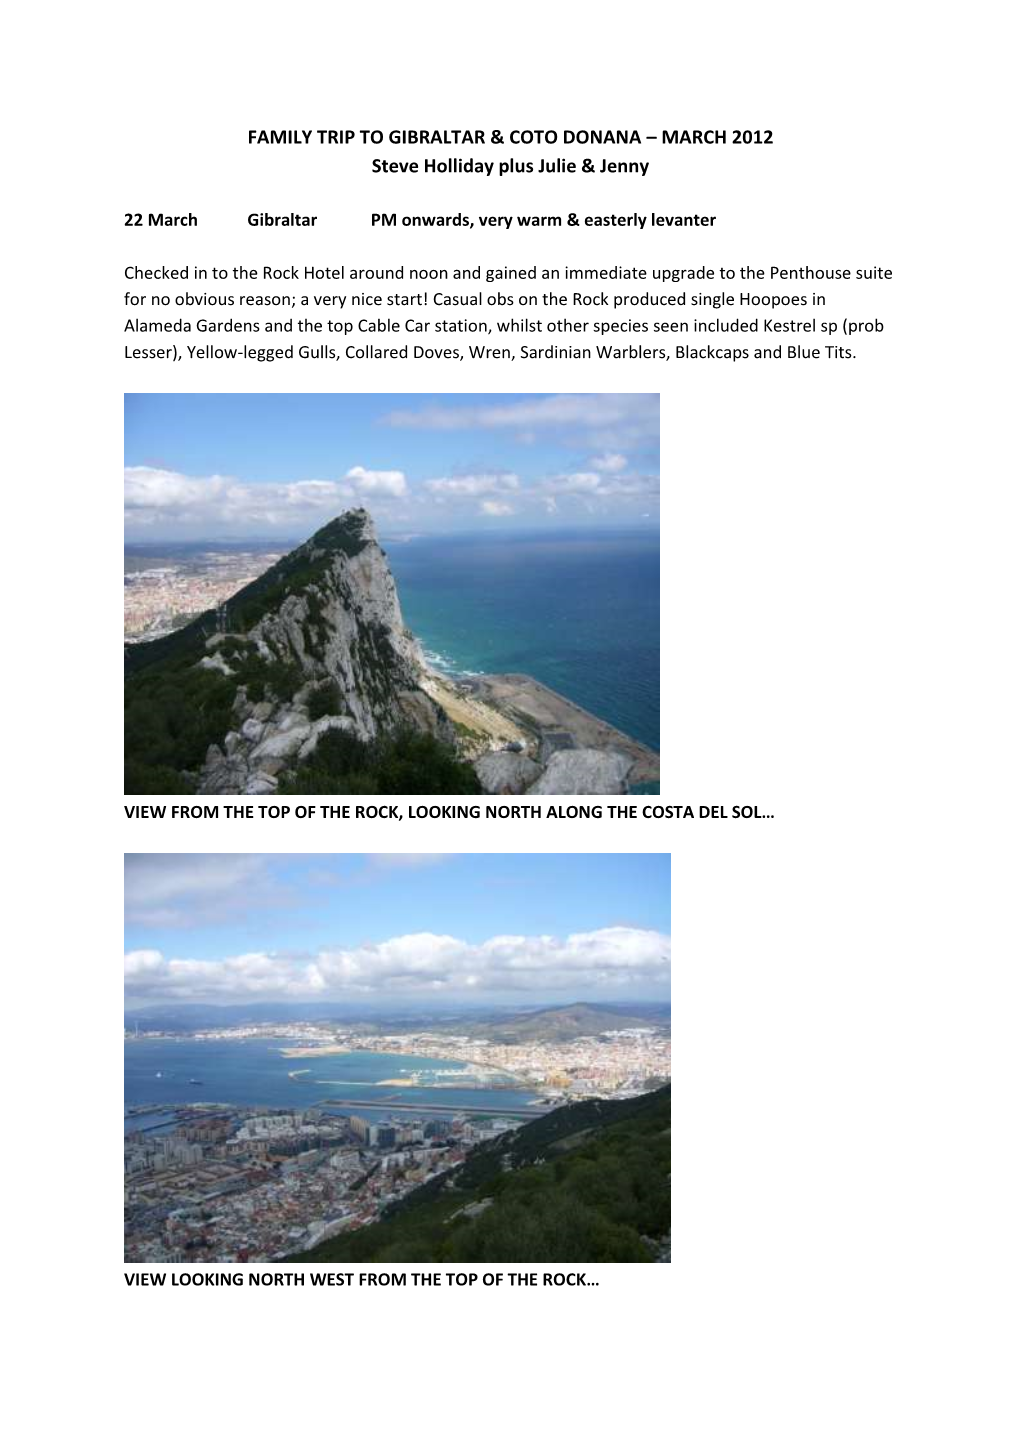 Family Trip to Gibraltar & Coto Donana – March 2012